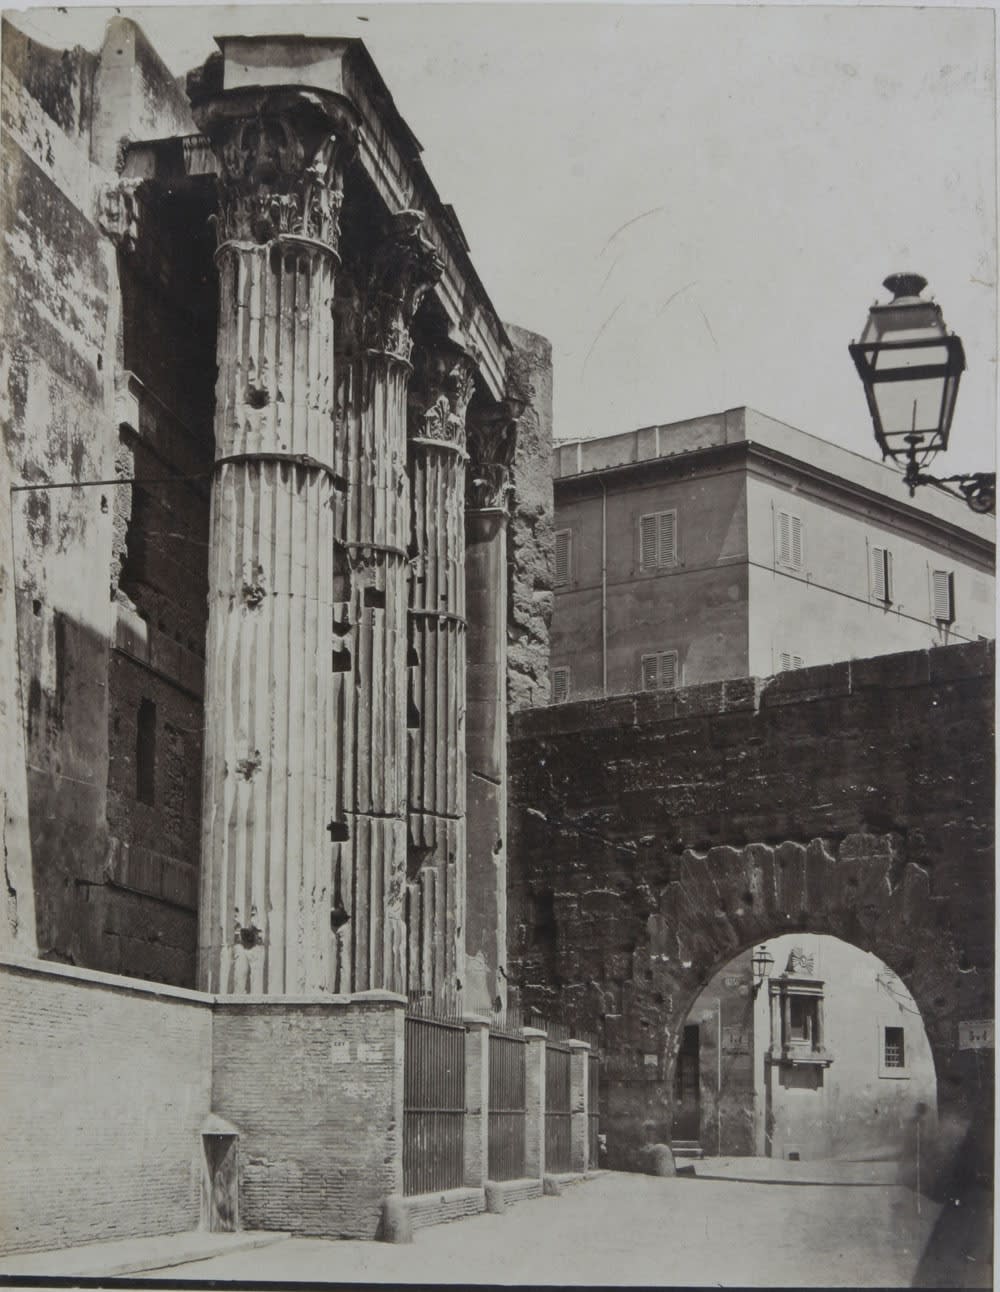 Roma vista dai pittori - fotografi della seconda metà del XIX secolo